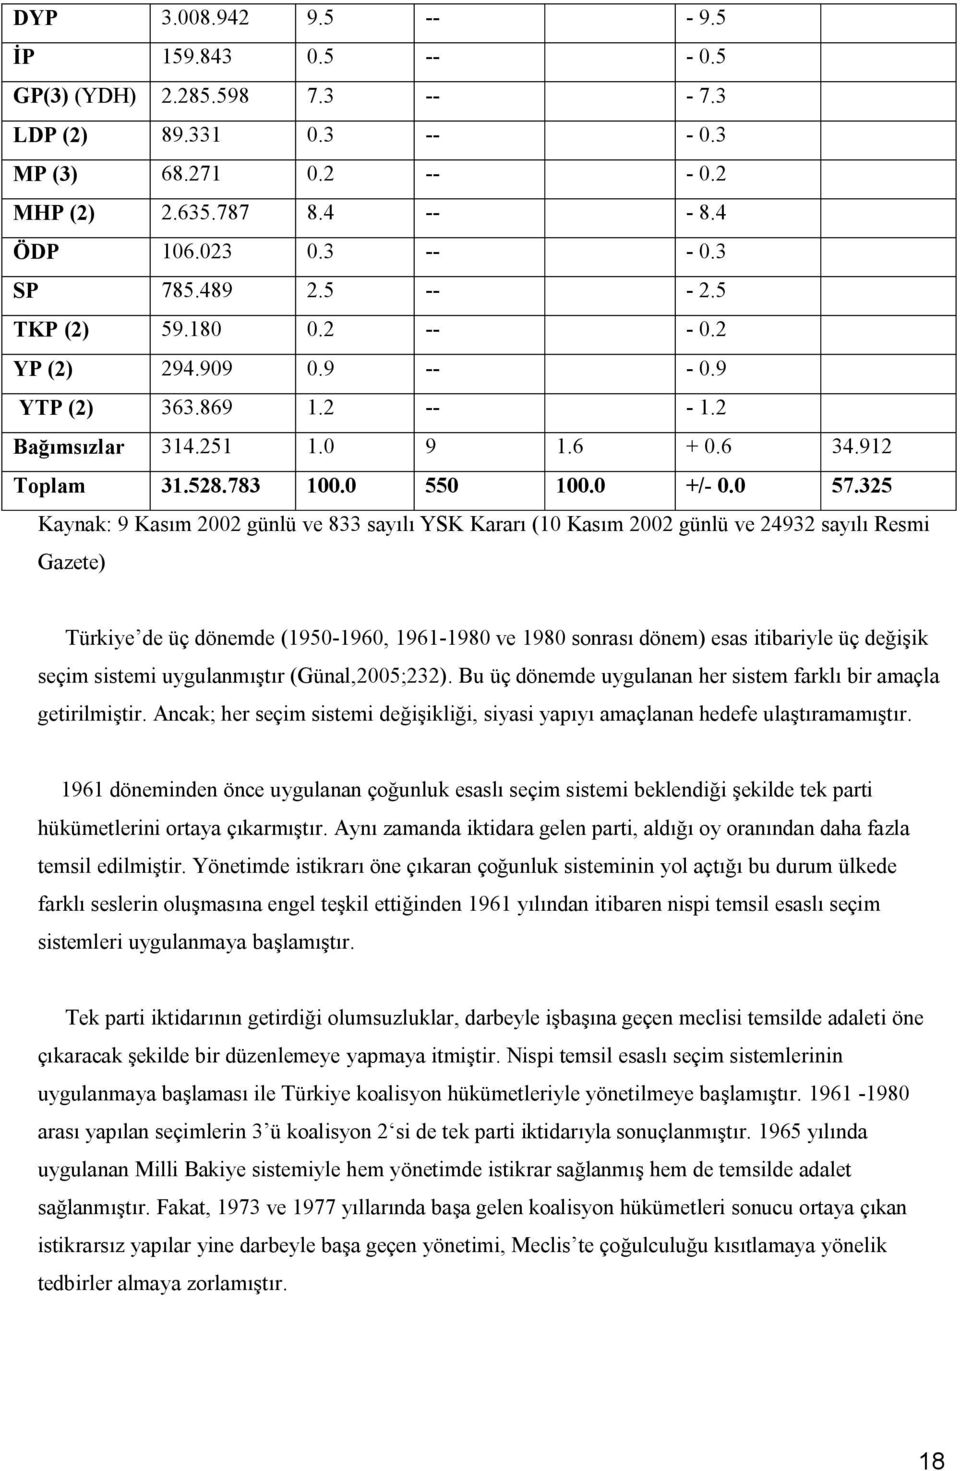 325 Kaynak: 9 Kasım 2002 günlü ve 833 sayılı YSK Kararı (10 Kasım 2002 günlü ve 24932 sayılı Resmi Gazete) Türkiye de üç dönemde (1950-1960, 1961-1980 ve 1980 sonrası dönem) esas itibariyle üç